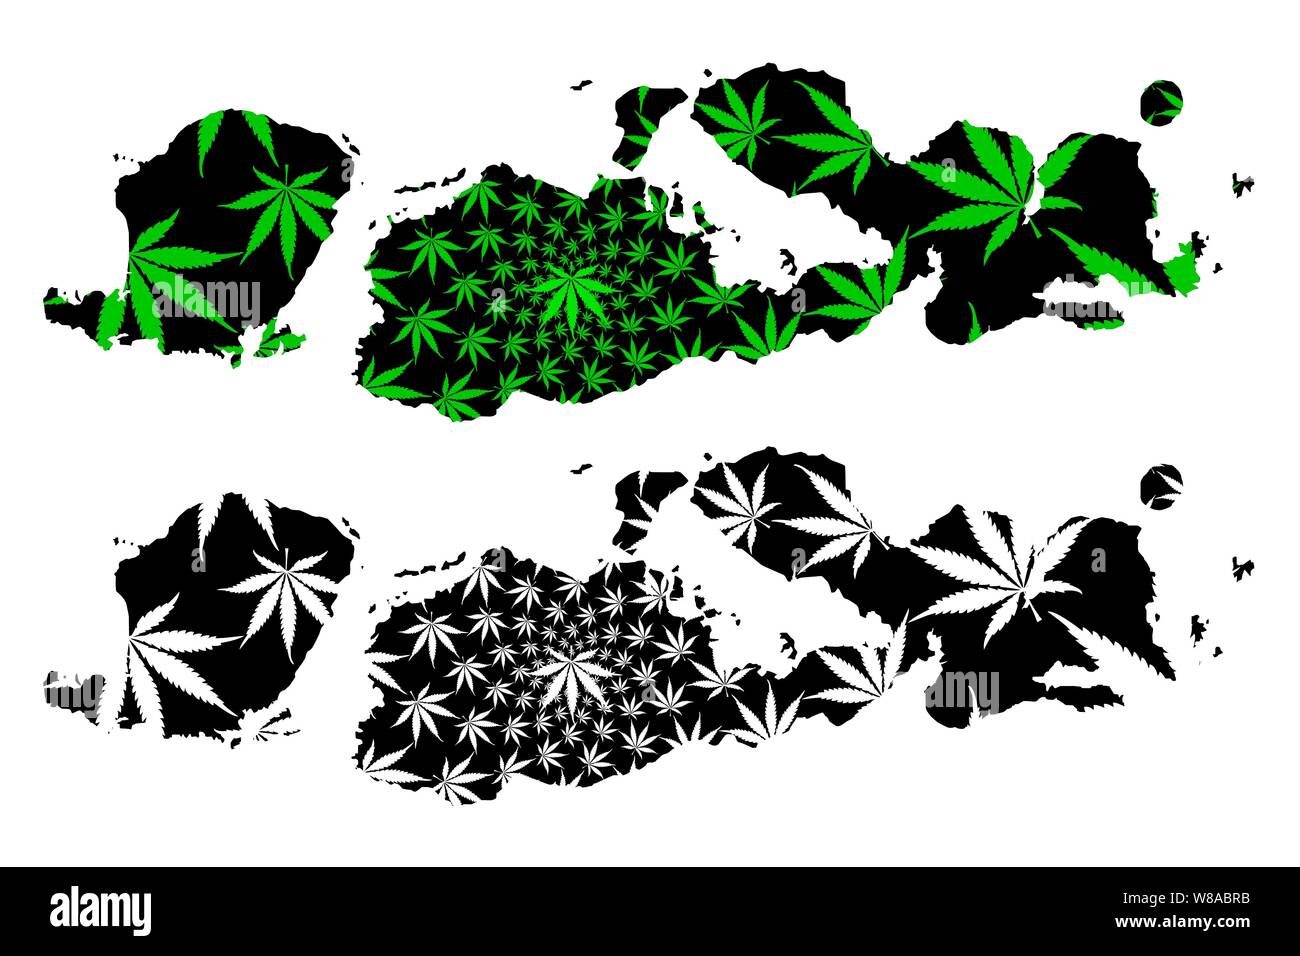 West Nusa Tenggara (Unterteilungen von Indonesien, Provinzen) Karte cannabis Blatt grün und schwarz, Nusa Tenggara Barat (Kleine Sunda Inseln) ma ausgelegt ist Stock Vektor